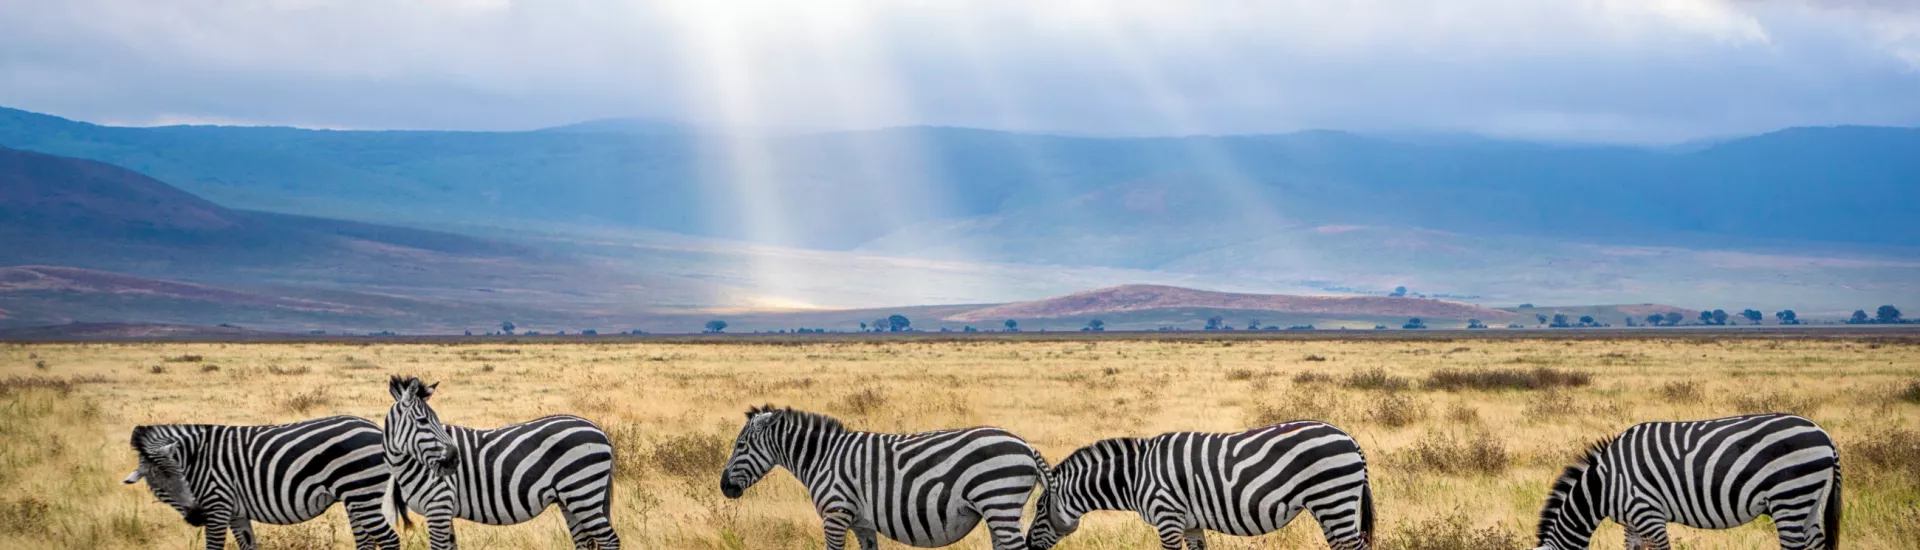 National Park of Kenya